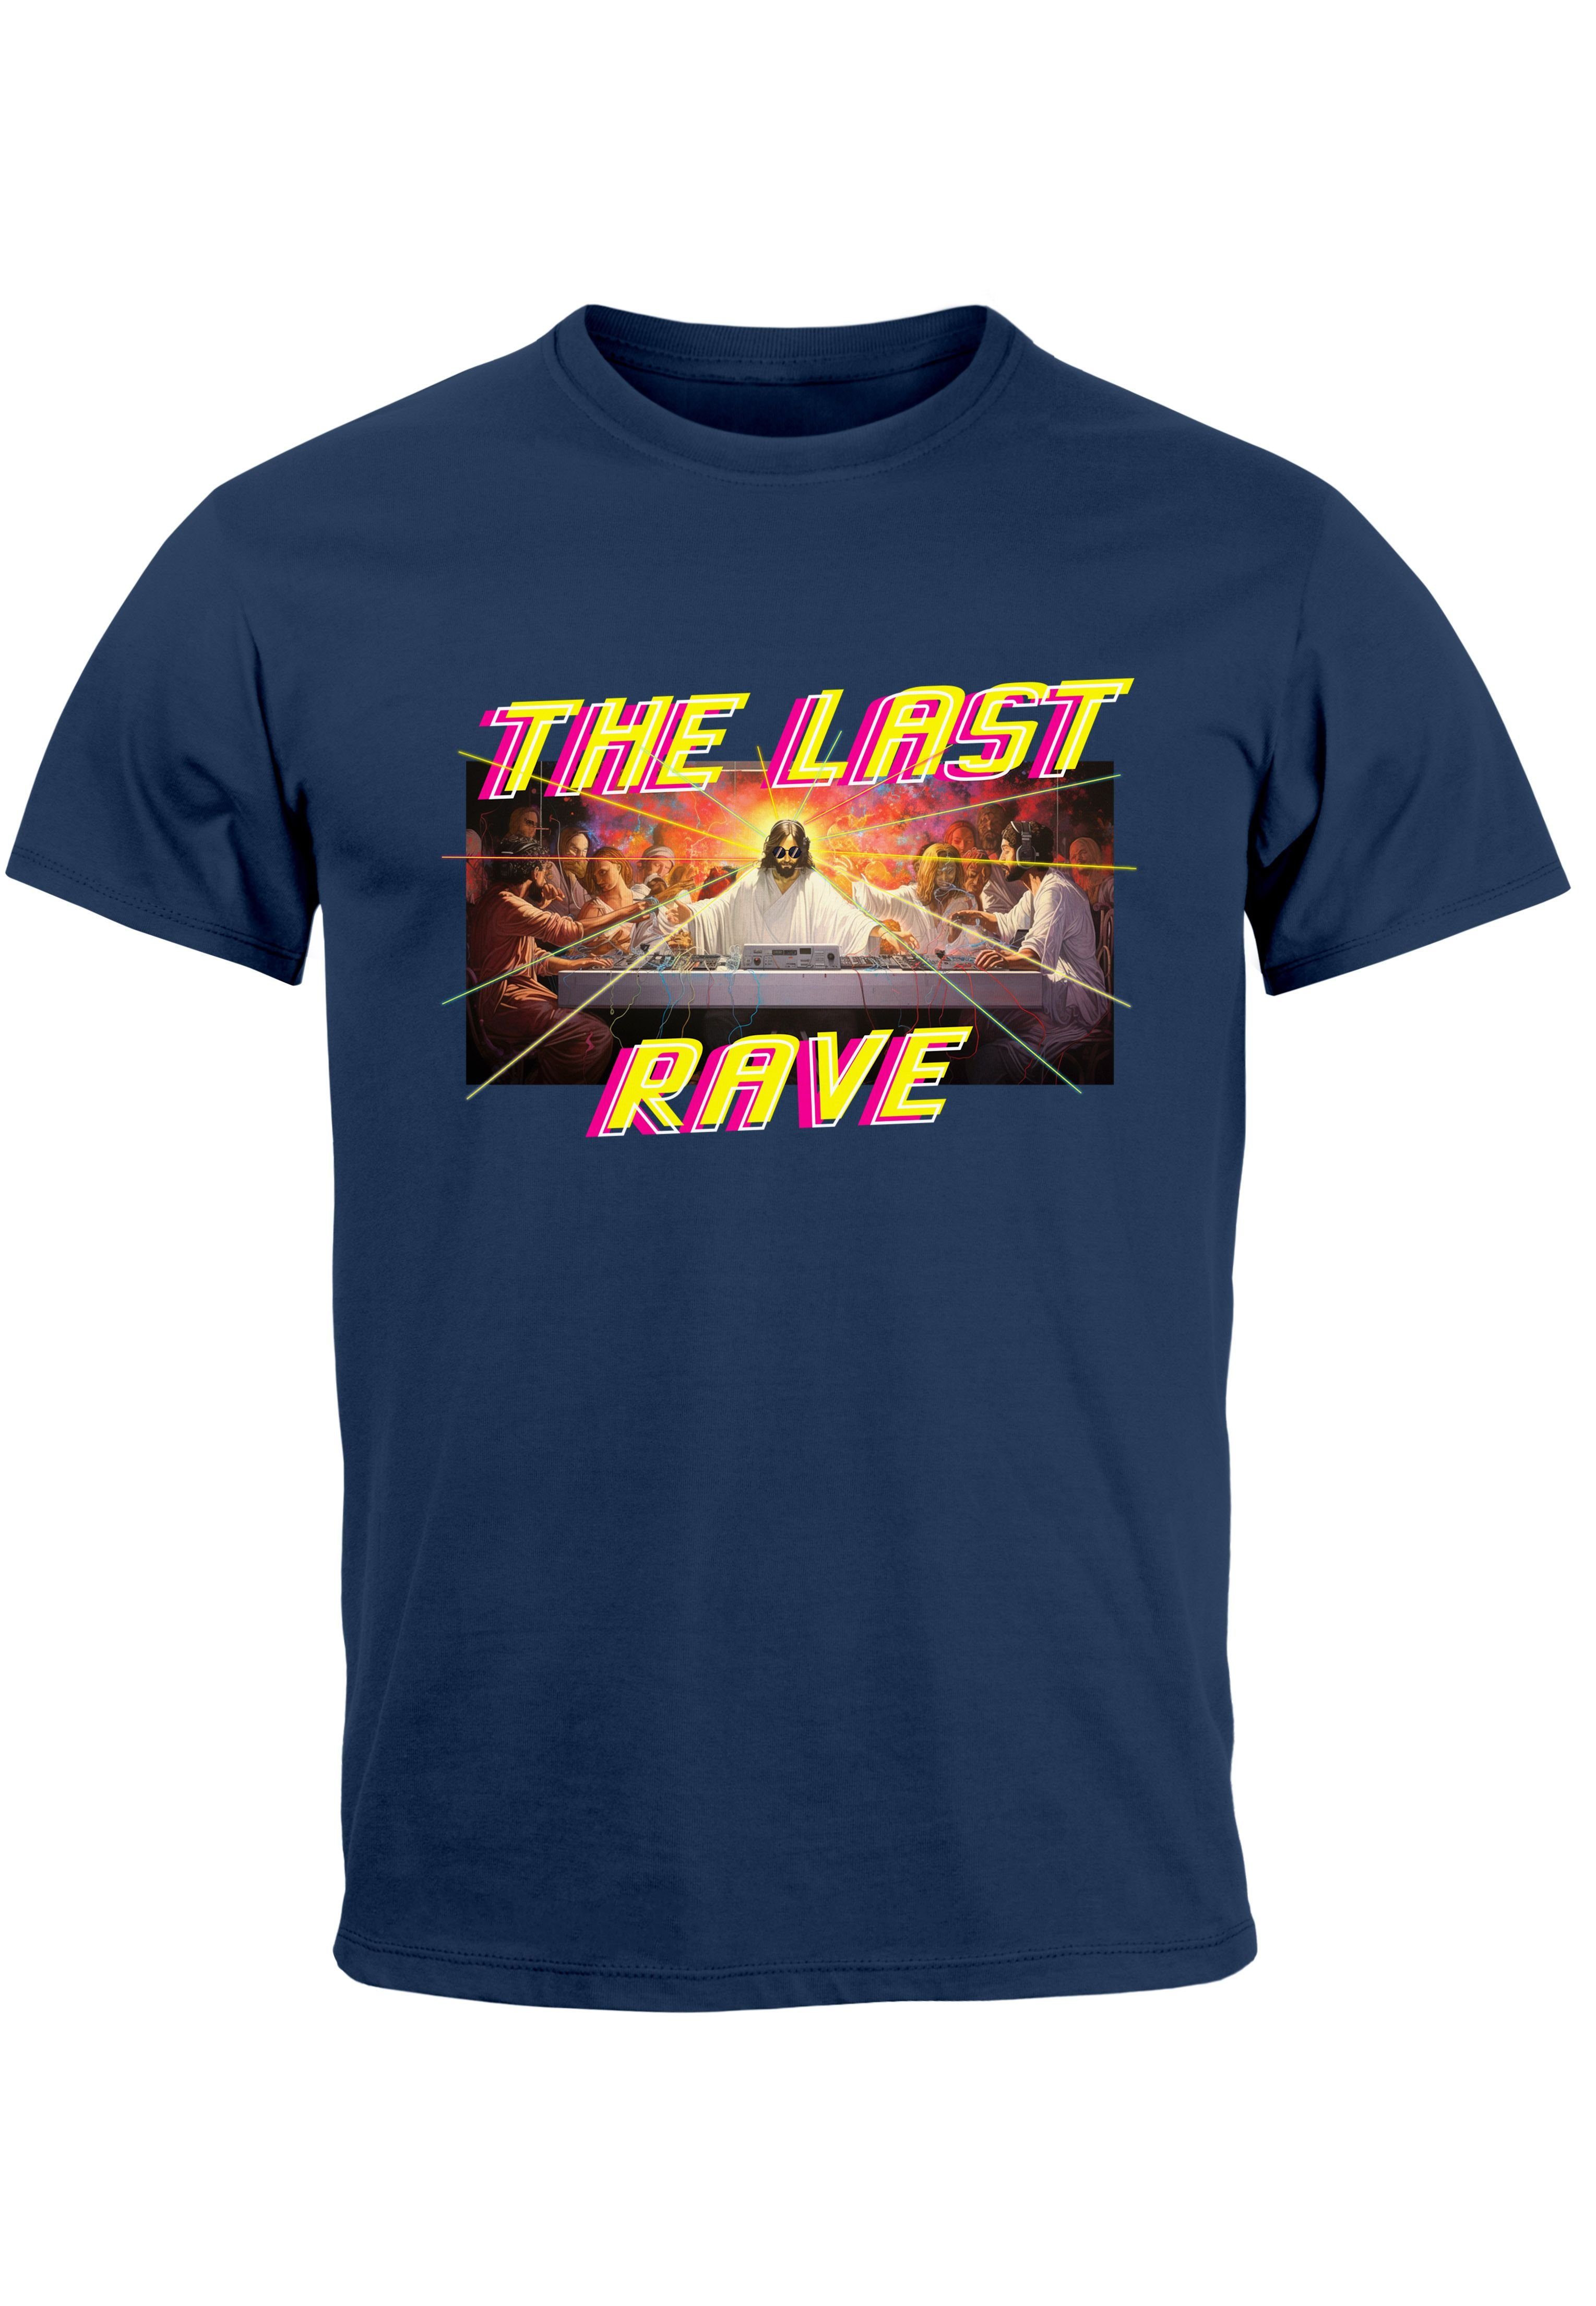 Neverless Print-Shirt Herren T-Shirt Techno The Last Rave Parodie Das letzte Abendmahl Jesus mit Print navy